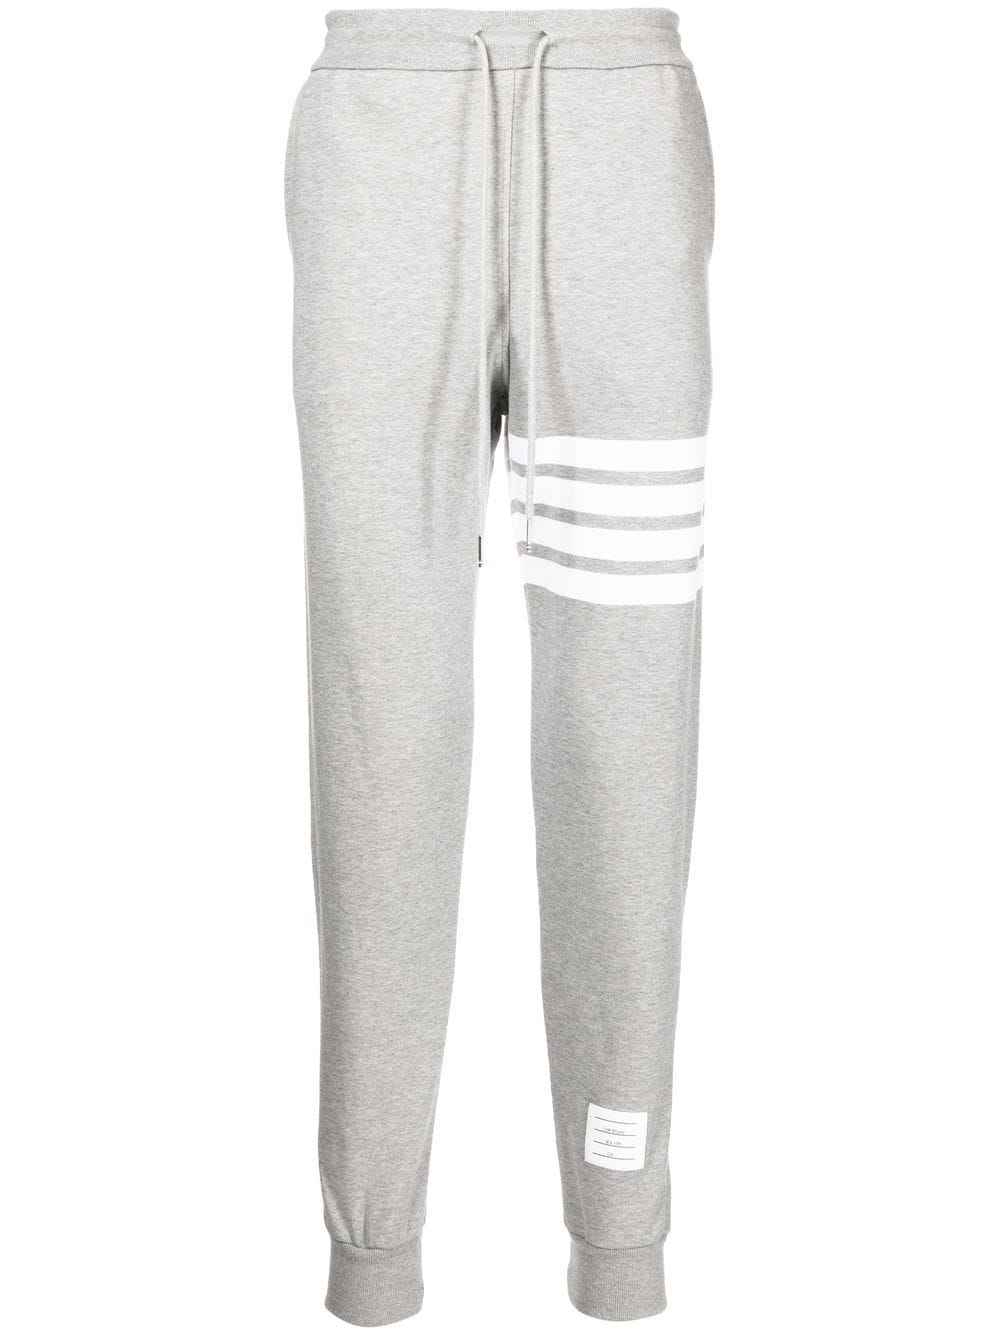 优质灰色纯棉男士4条蜂窝条纹运动裤